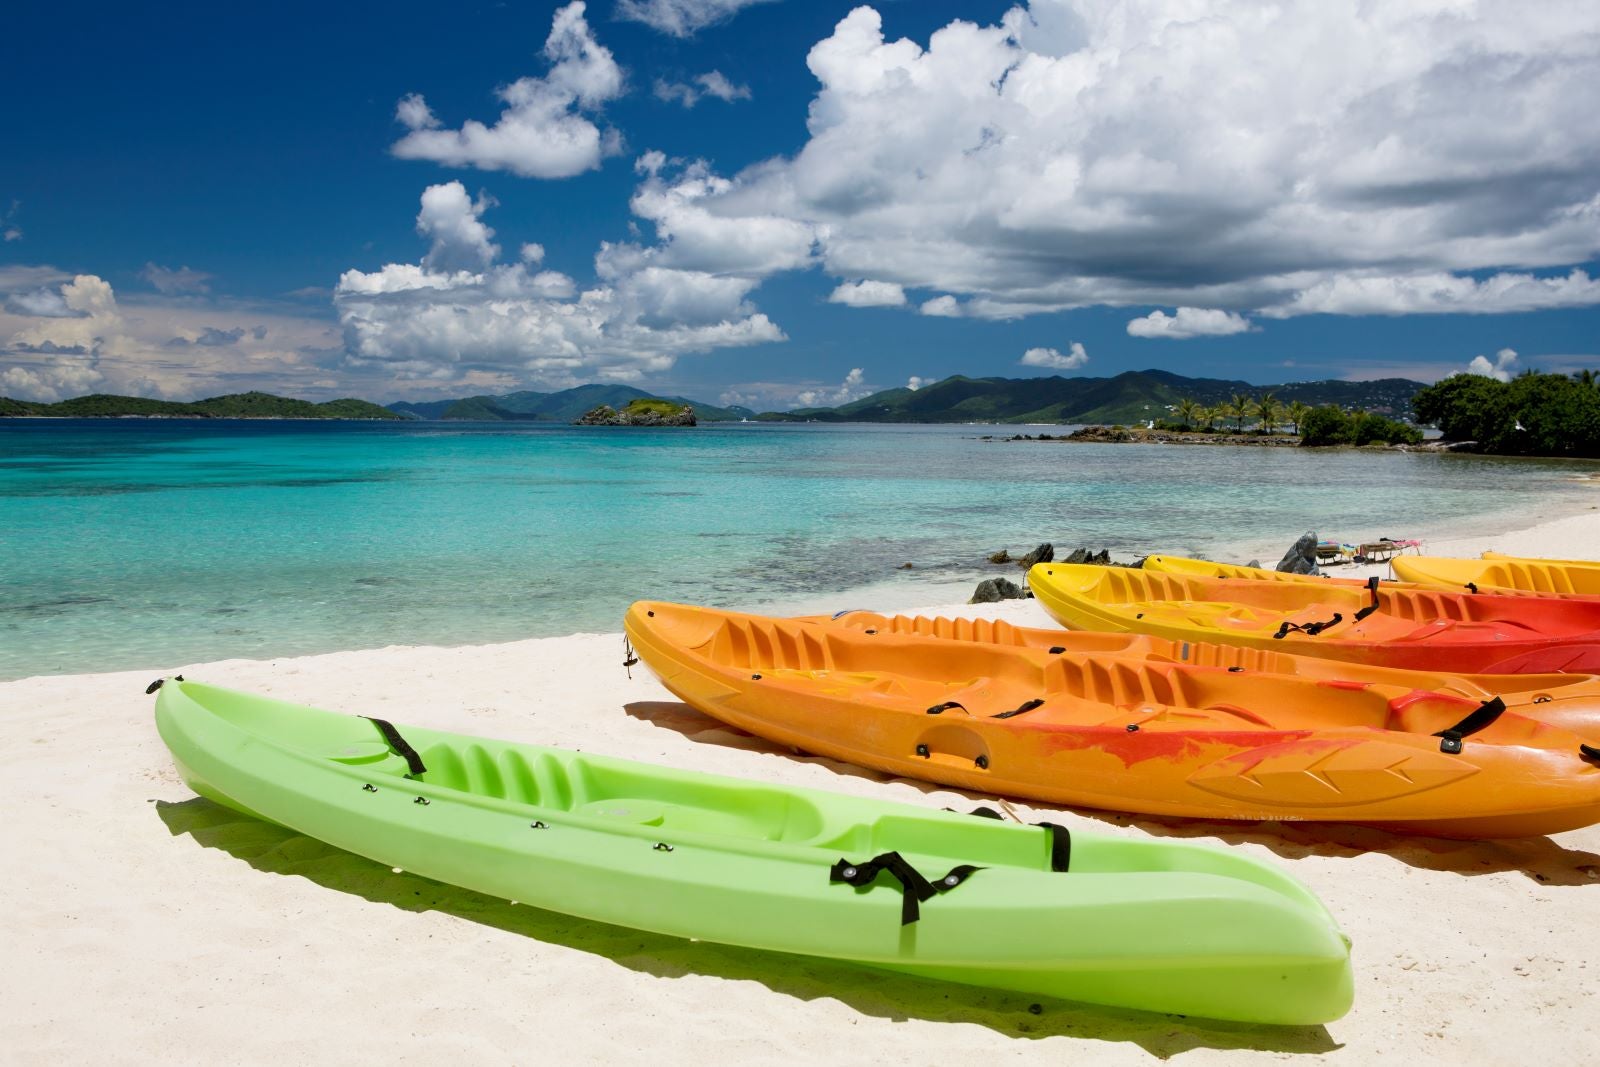 kayaks in St. Thomas, U.S. Virgin Islands in the Caribbean.